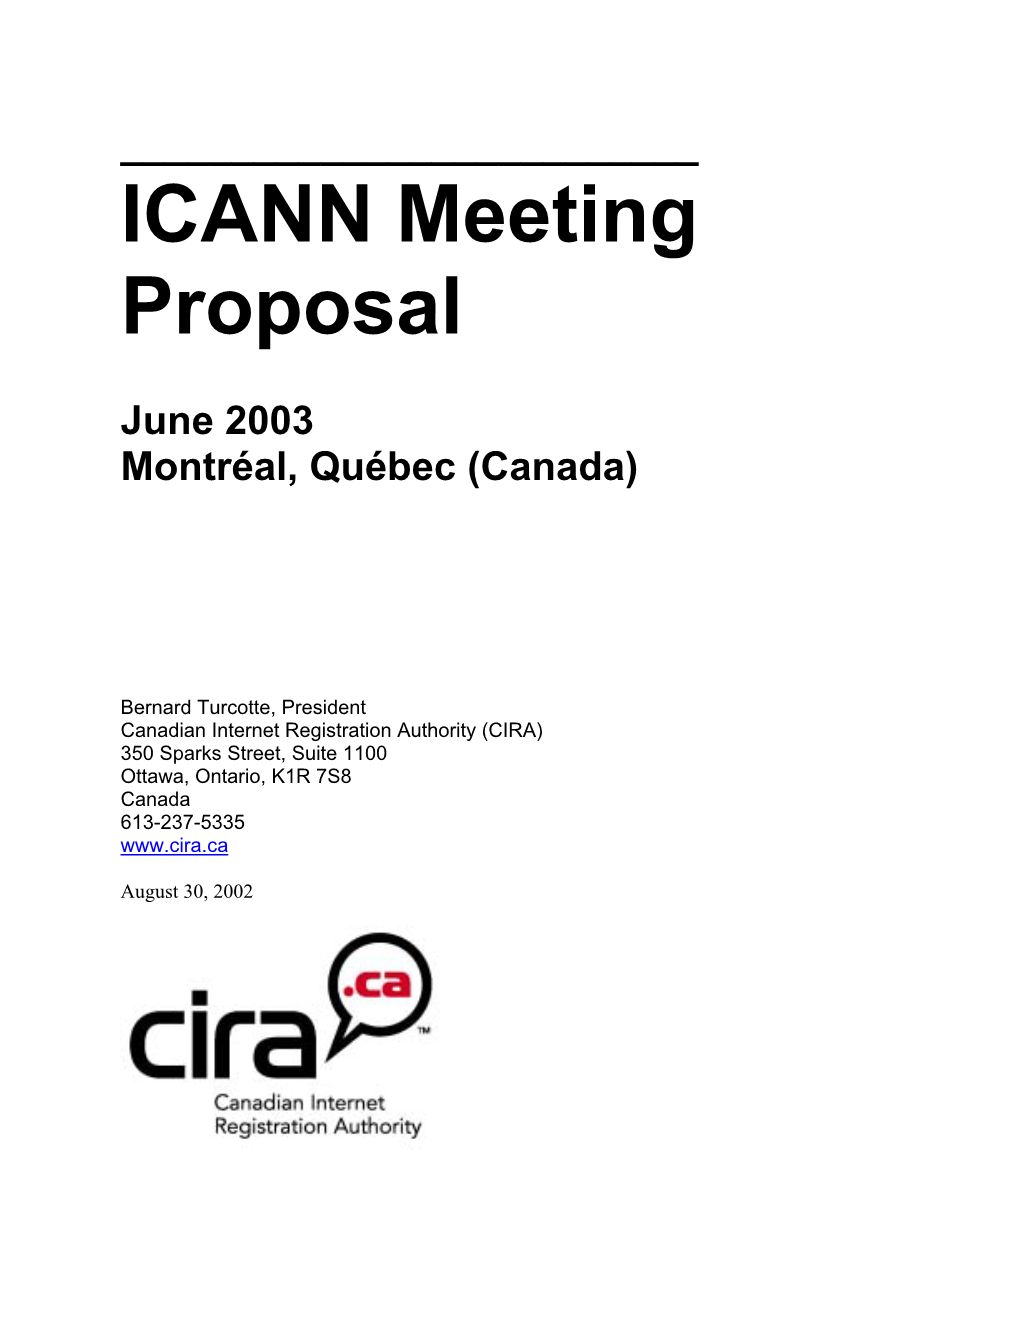 ICANN June 2003 Meeting Proposal